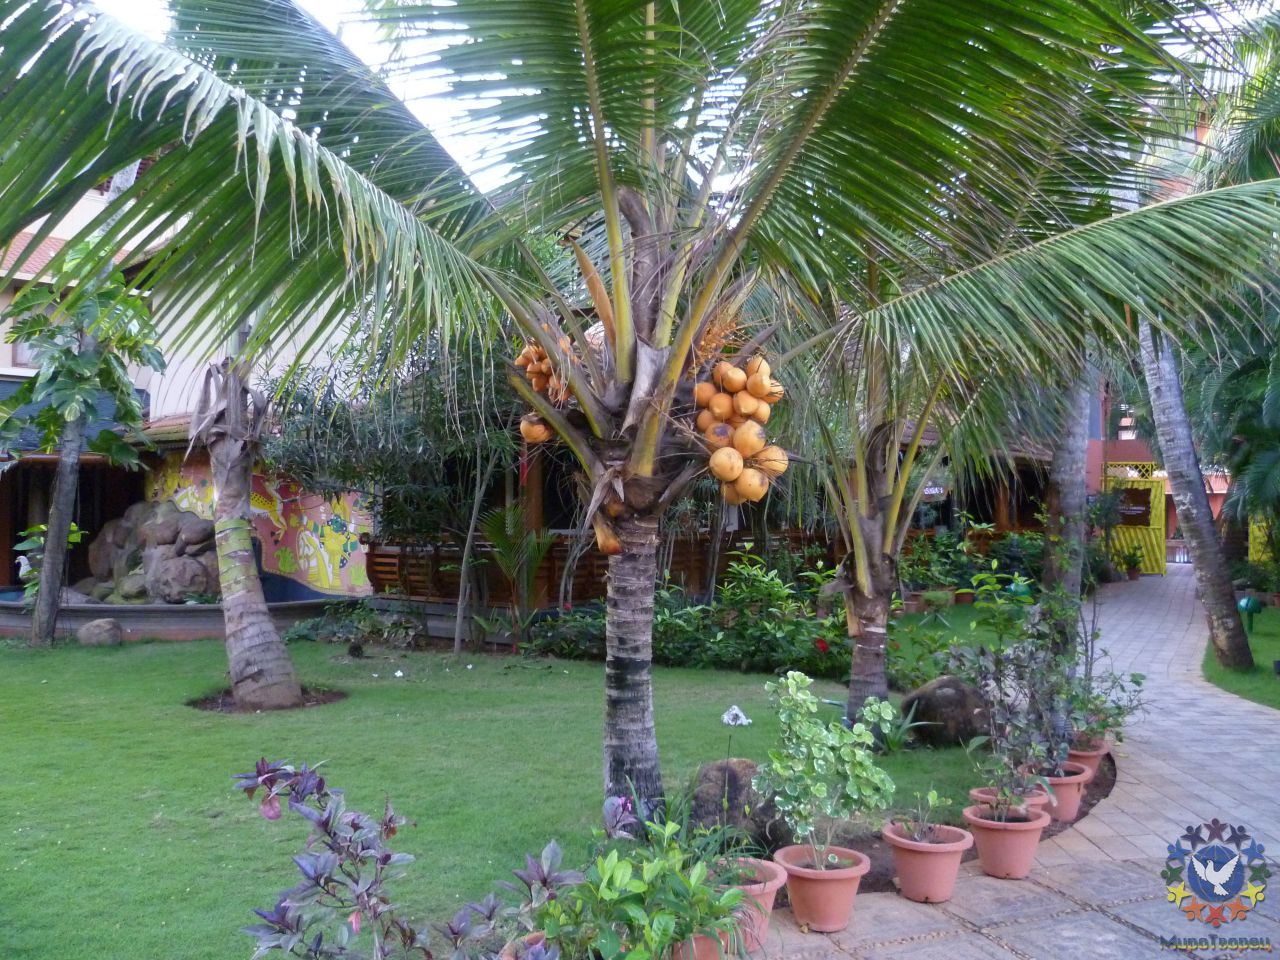 отель. всё время опасалась ходить мимо кокосовых пальм, такая вот .. как прилетит на макушку... сразу всё раскроется... - группа в Индии, ноябрь 2011, часть 5 (Объединение)